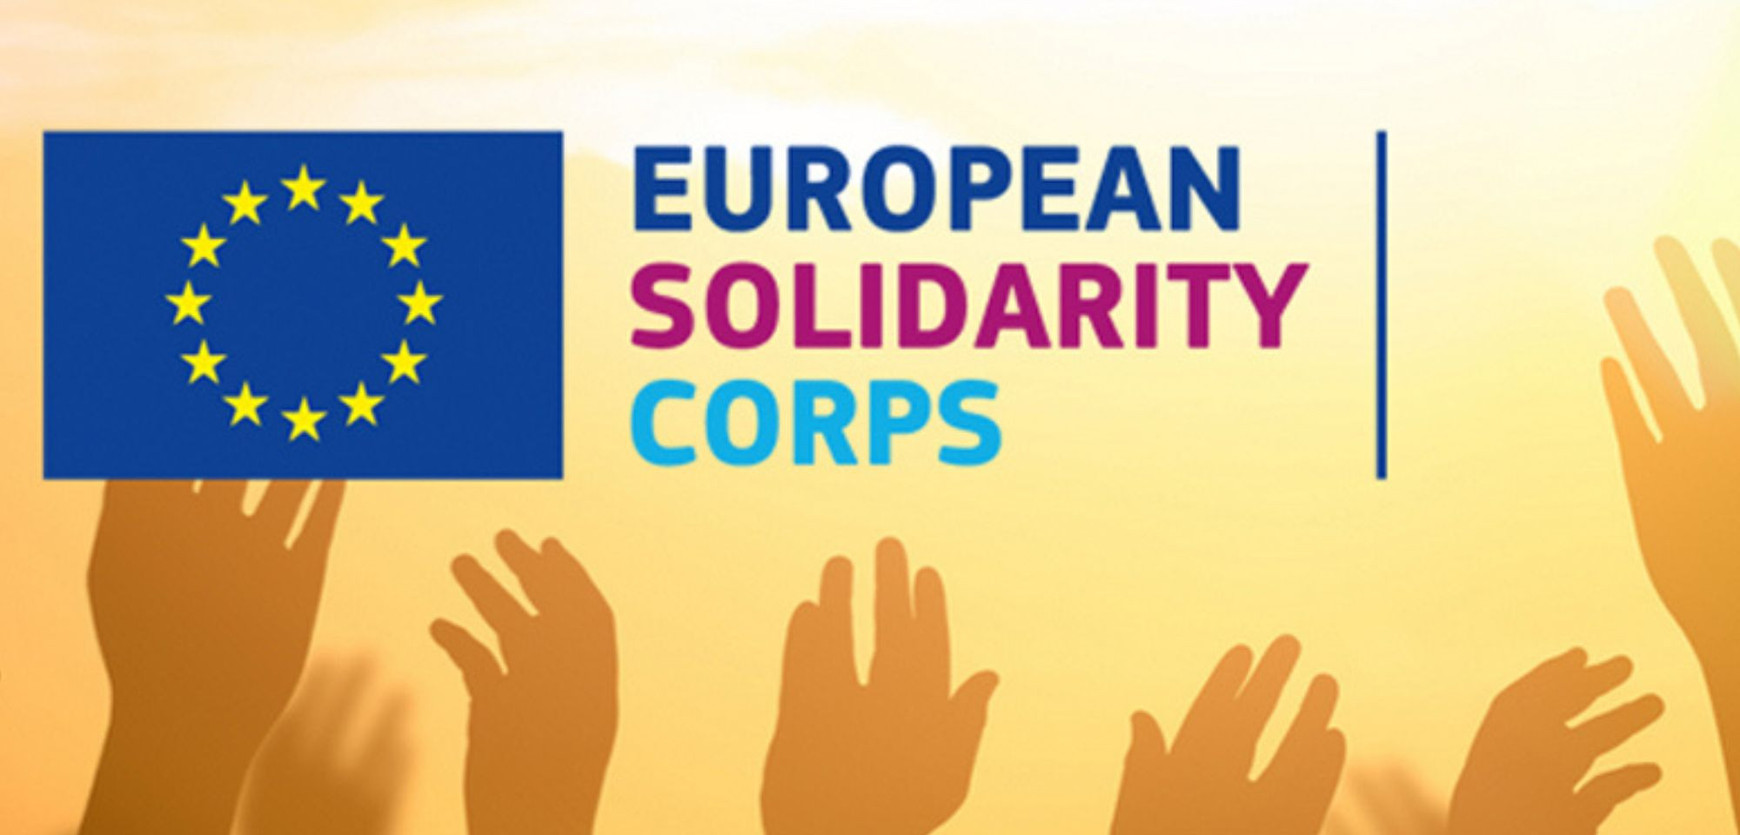 Et si on s'engageait dans un Corps européen de solidarité ? - L'Europe vue d'ici #18